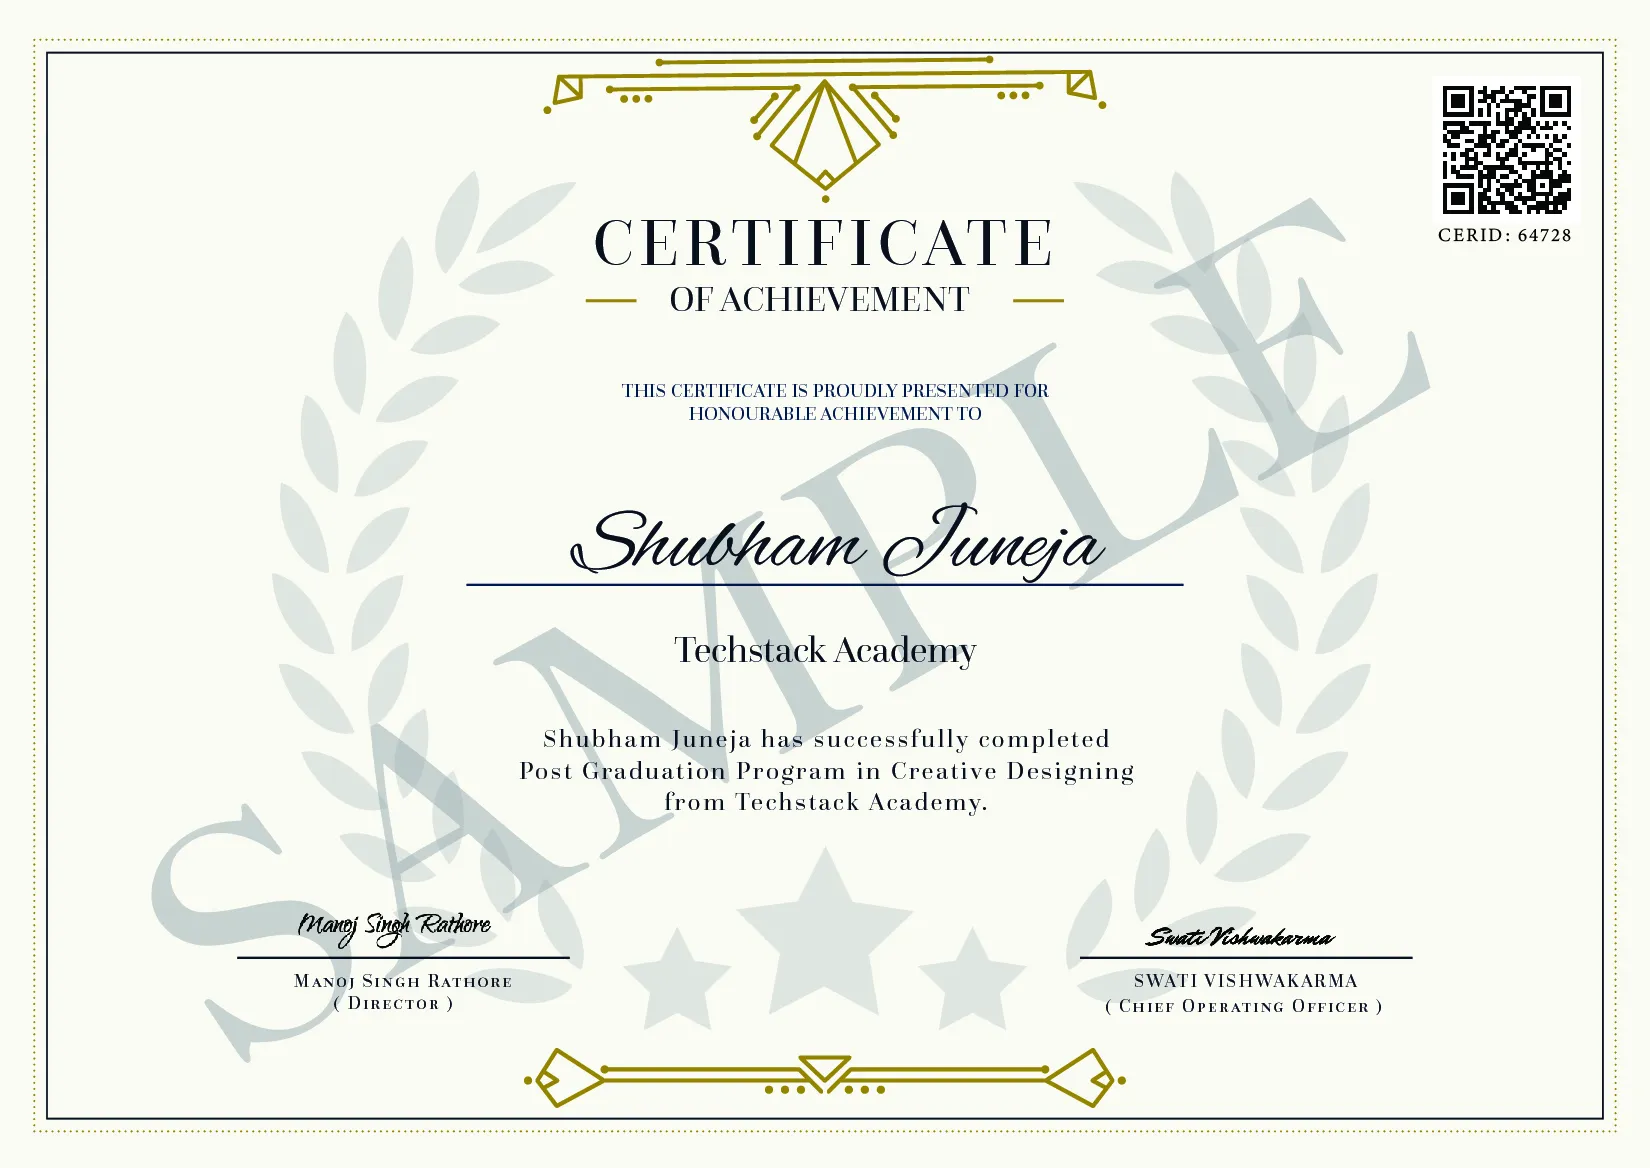 Post Graduation Program in Creative Designing Institute Certificate